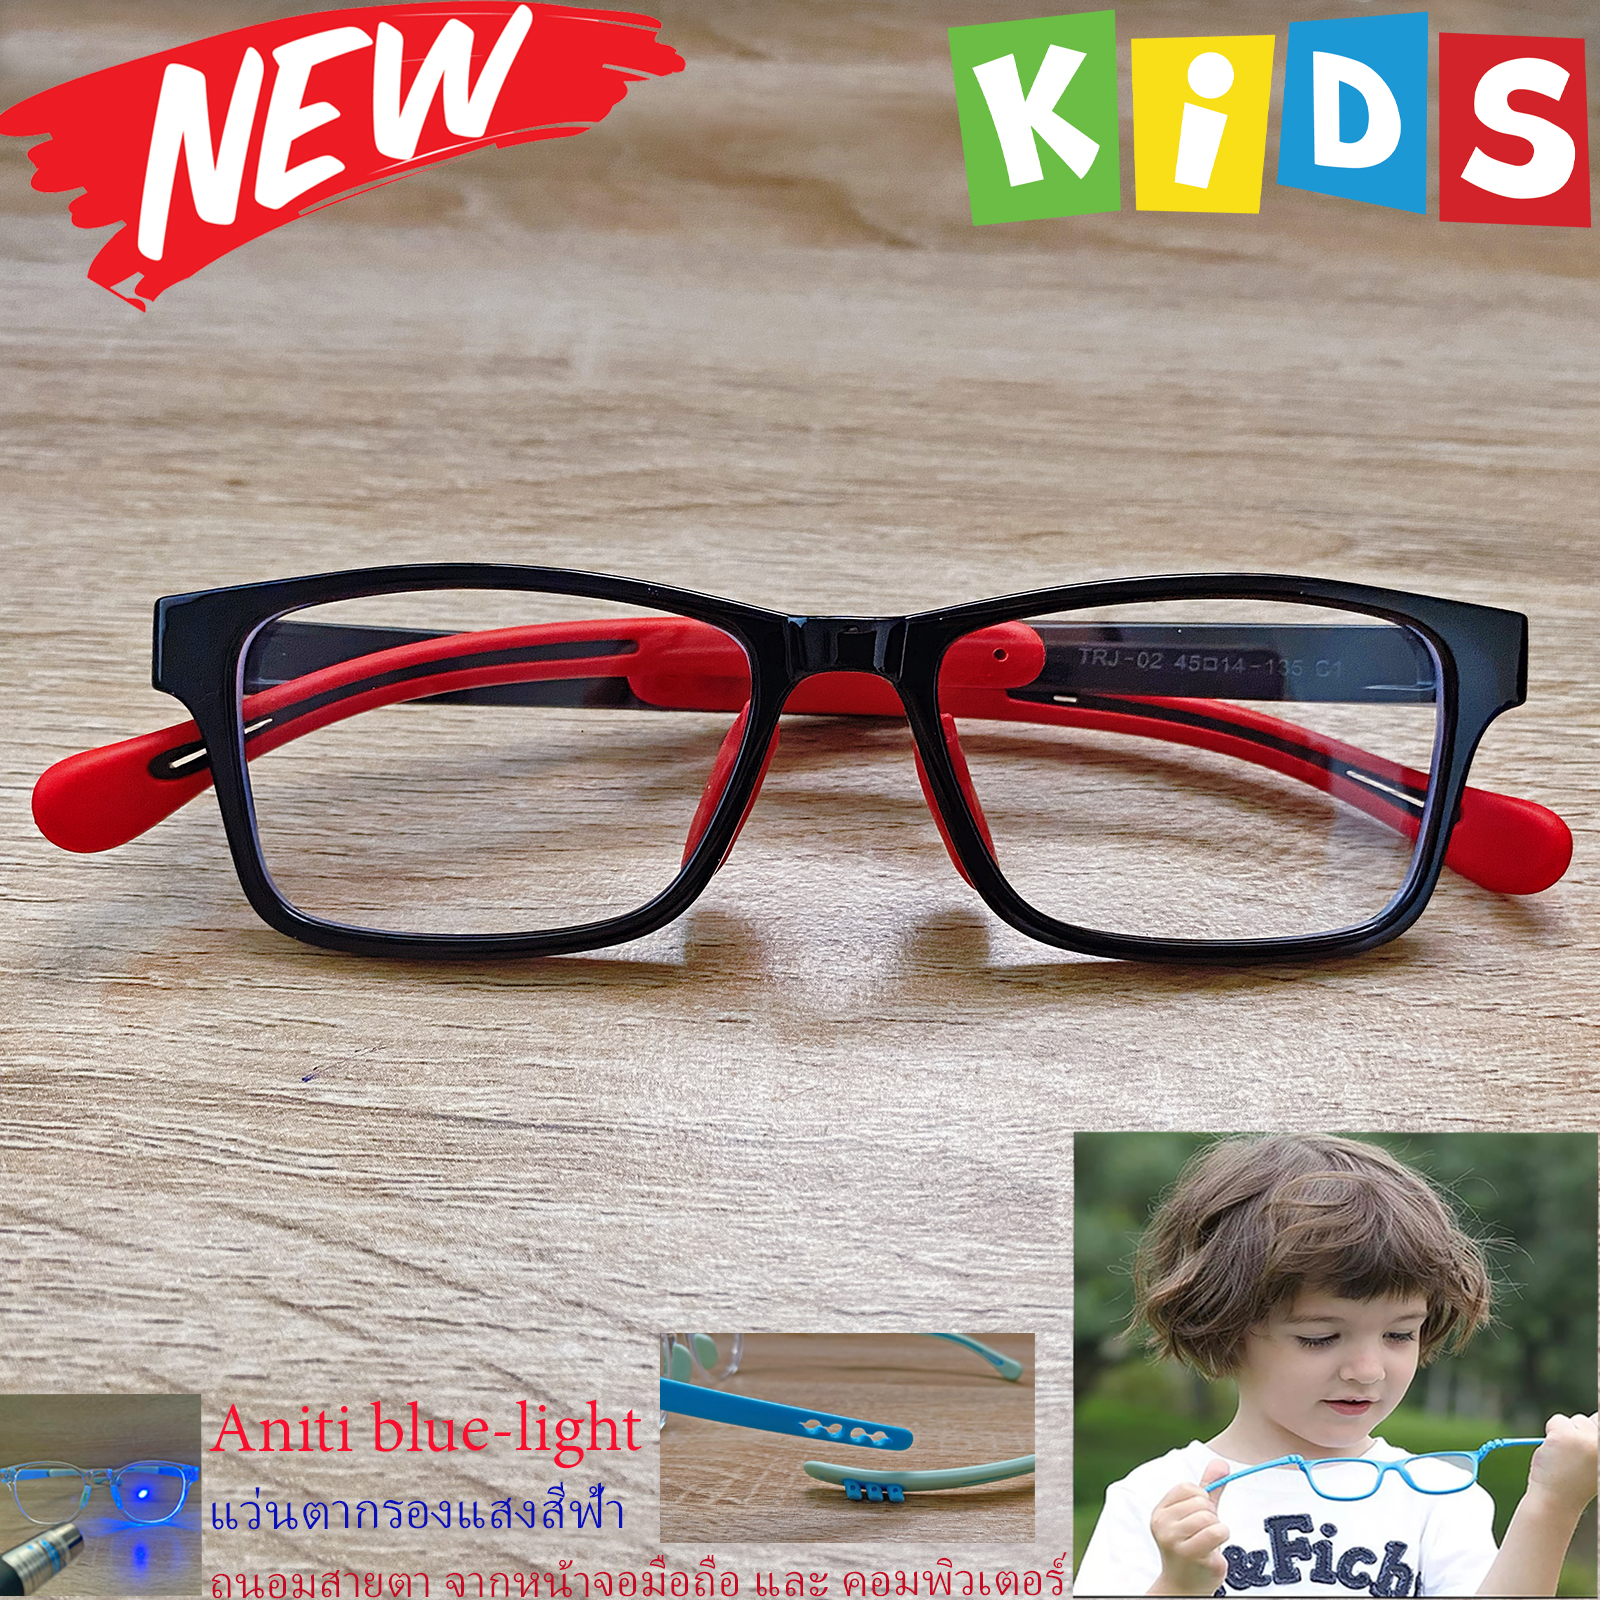 แว่นตาเด็ก กรองแสงสีฟ้า blue block แว่นเด็ก บลูบล็อค รุ่น 02 สีดำ ขาข้อต่อยืดหยุ่น ขาปรับระดับได้ วัสดุTR90 เหมาะสำหรับเลนส์สายตา